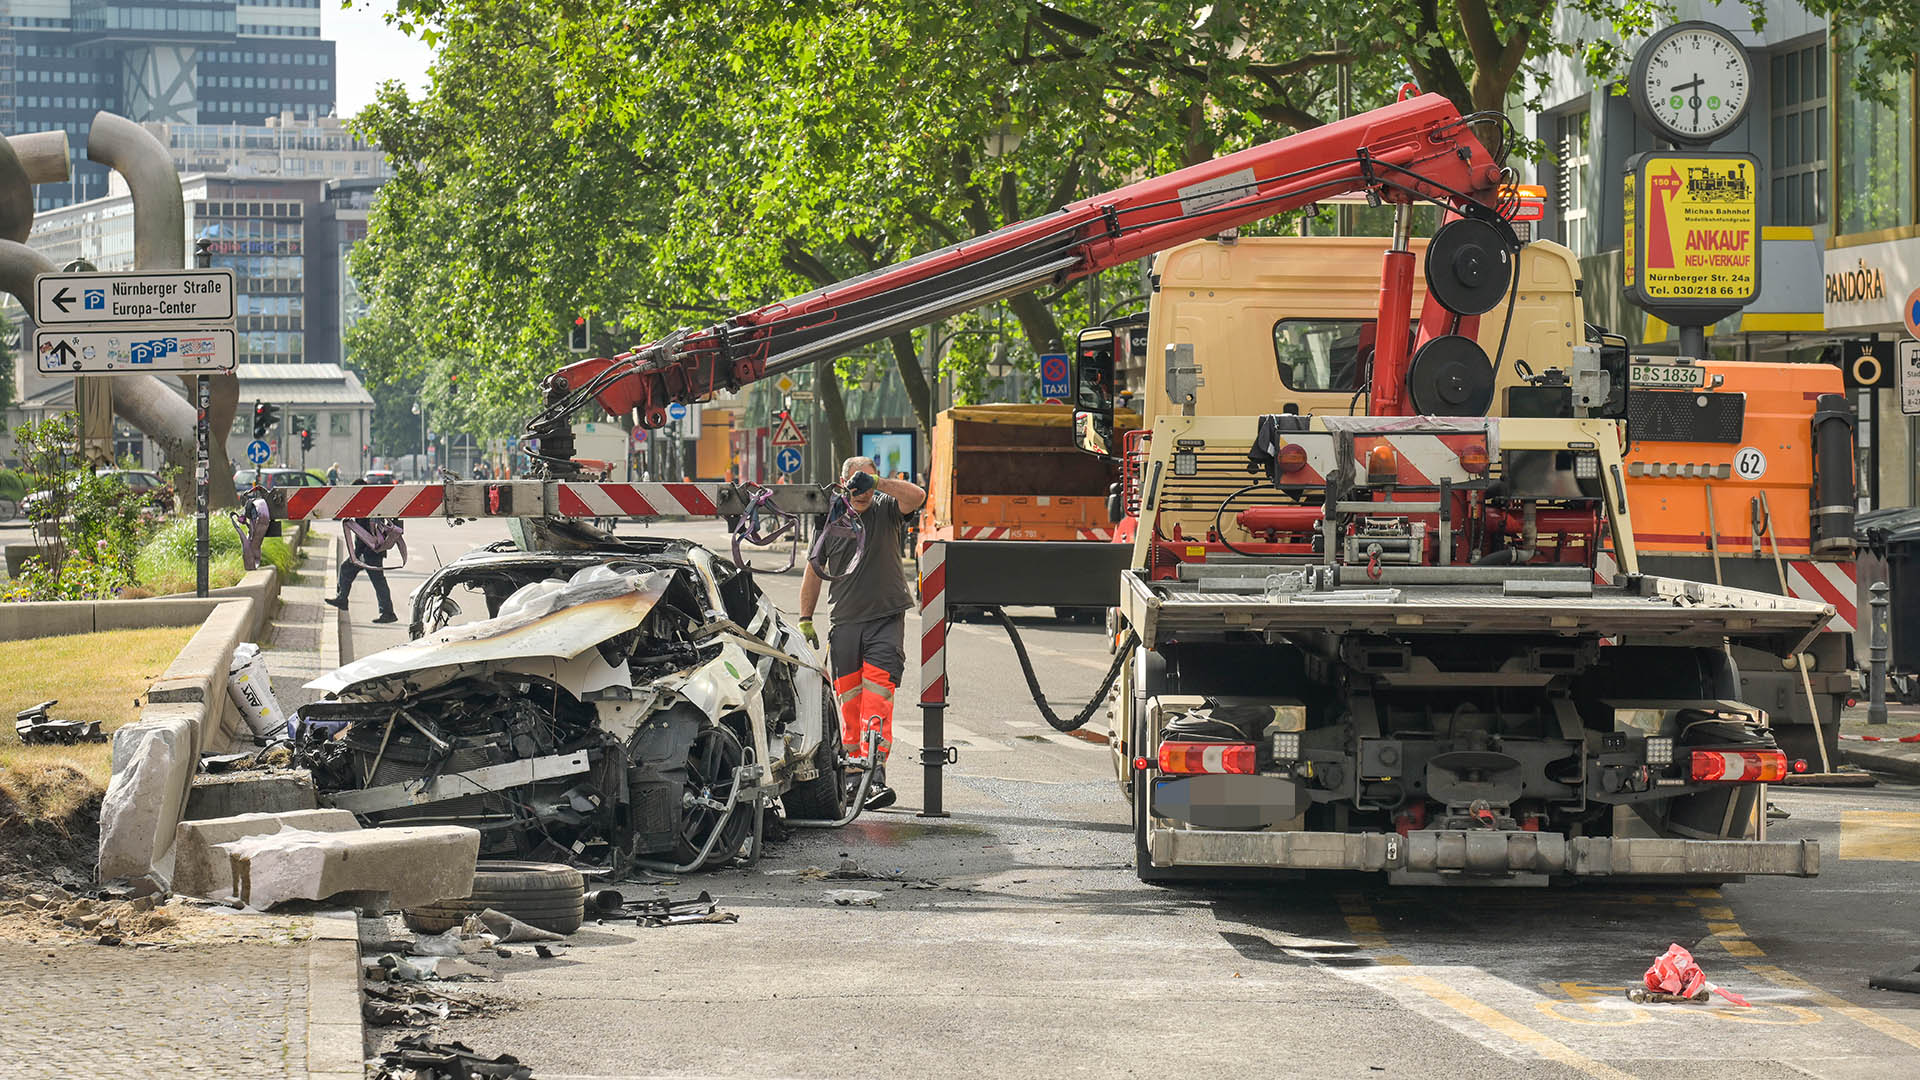 Abschleppwagen nach Autounfall auf der Tauentzienstraße, Berlin Charlottenburg. (Quelle: dpa/Schoening)